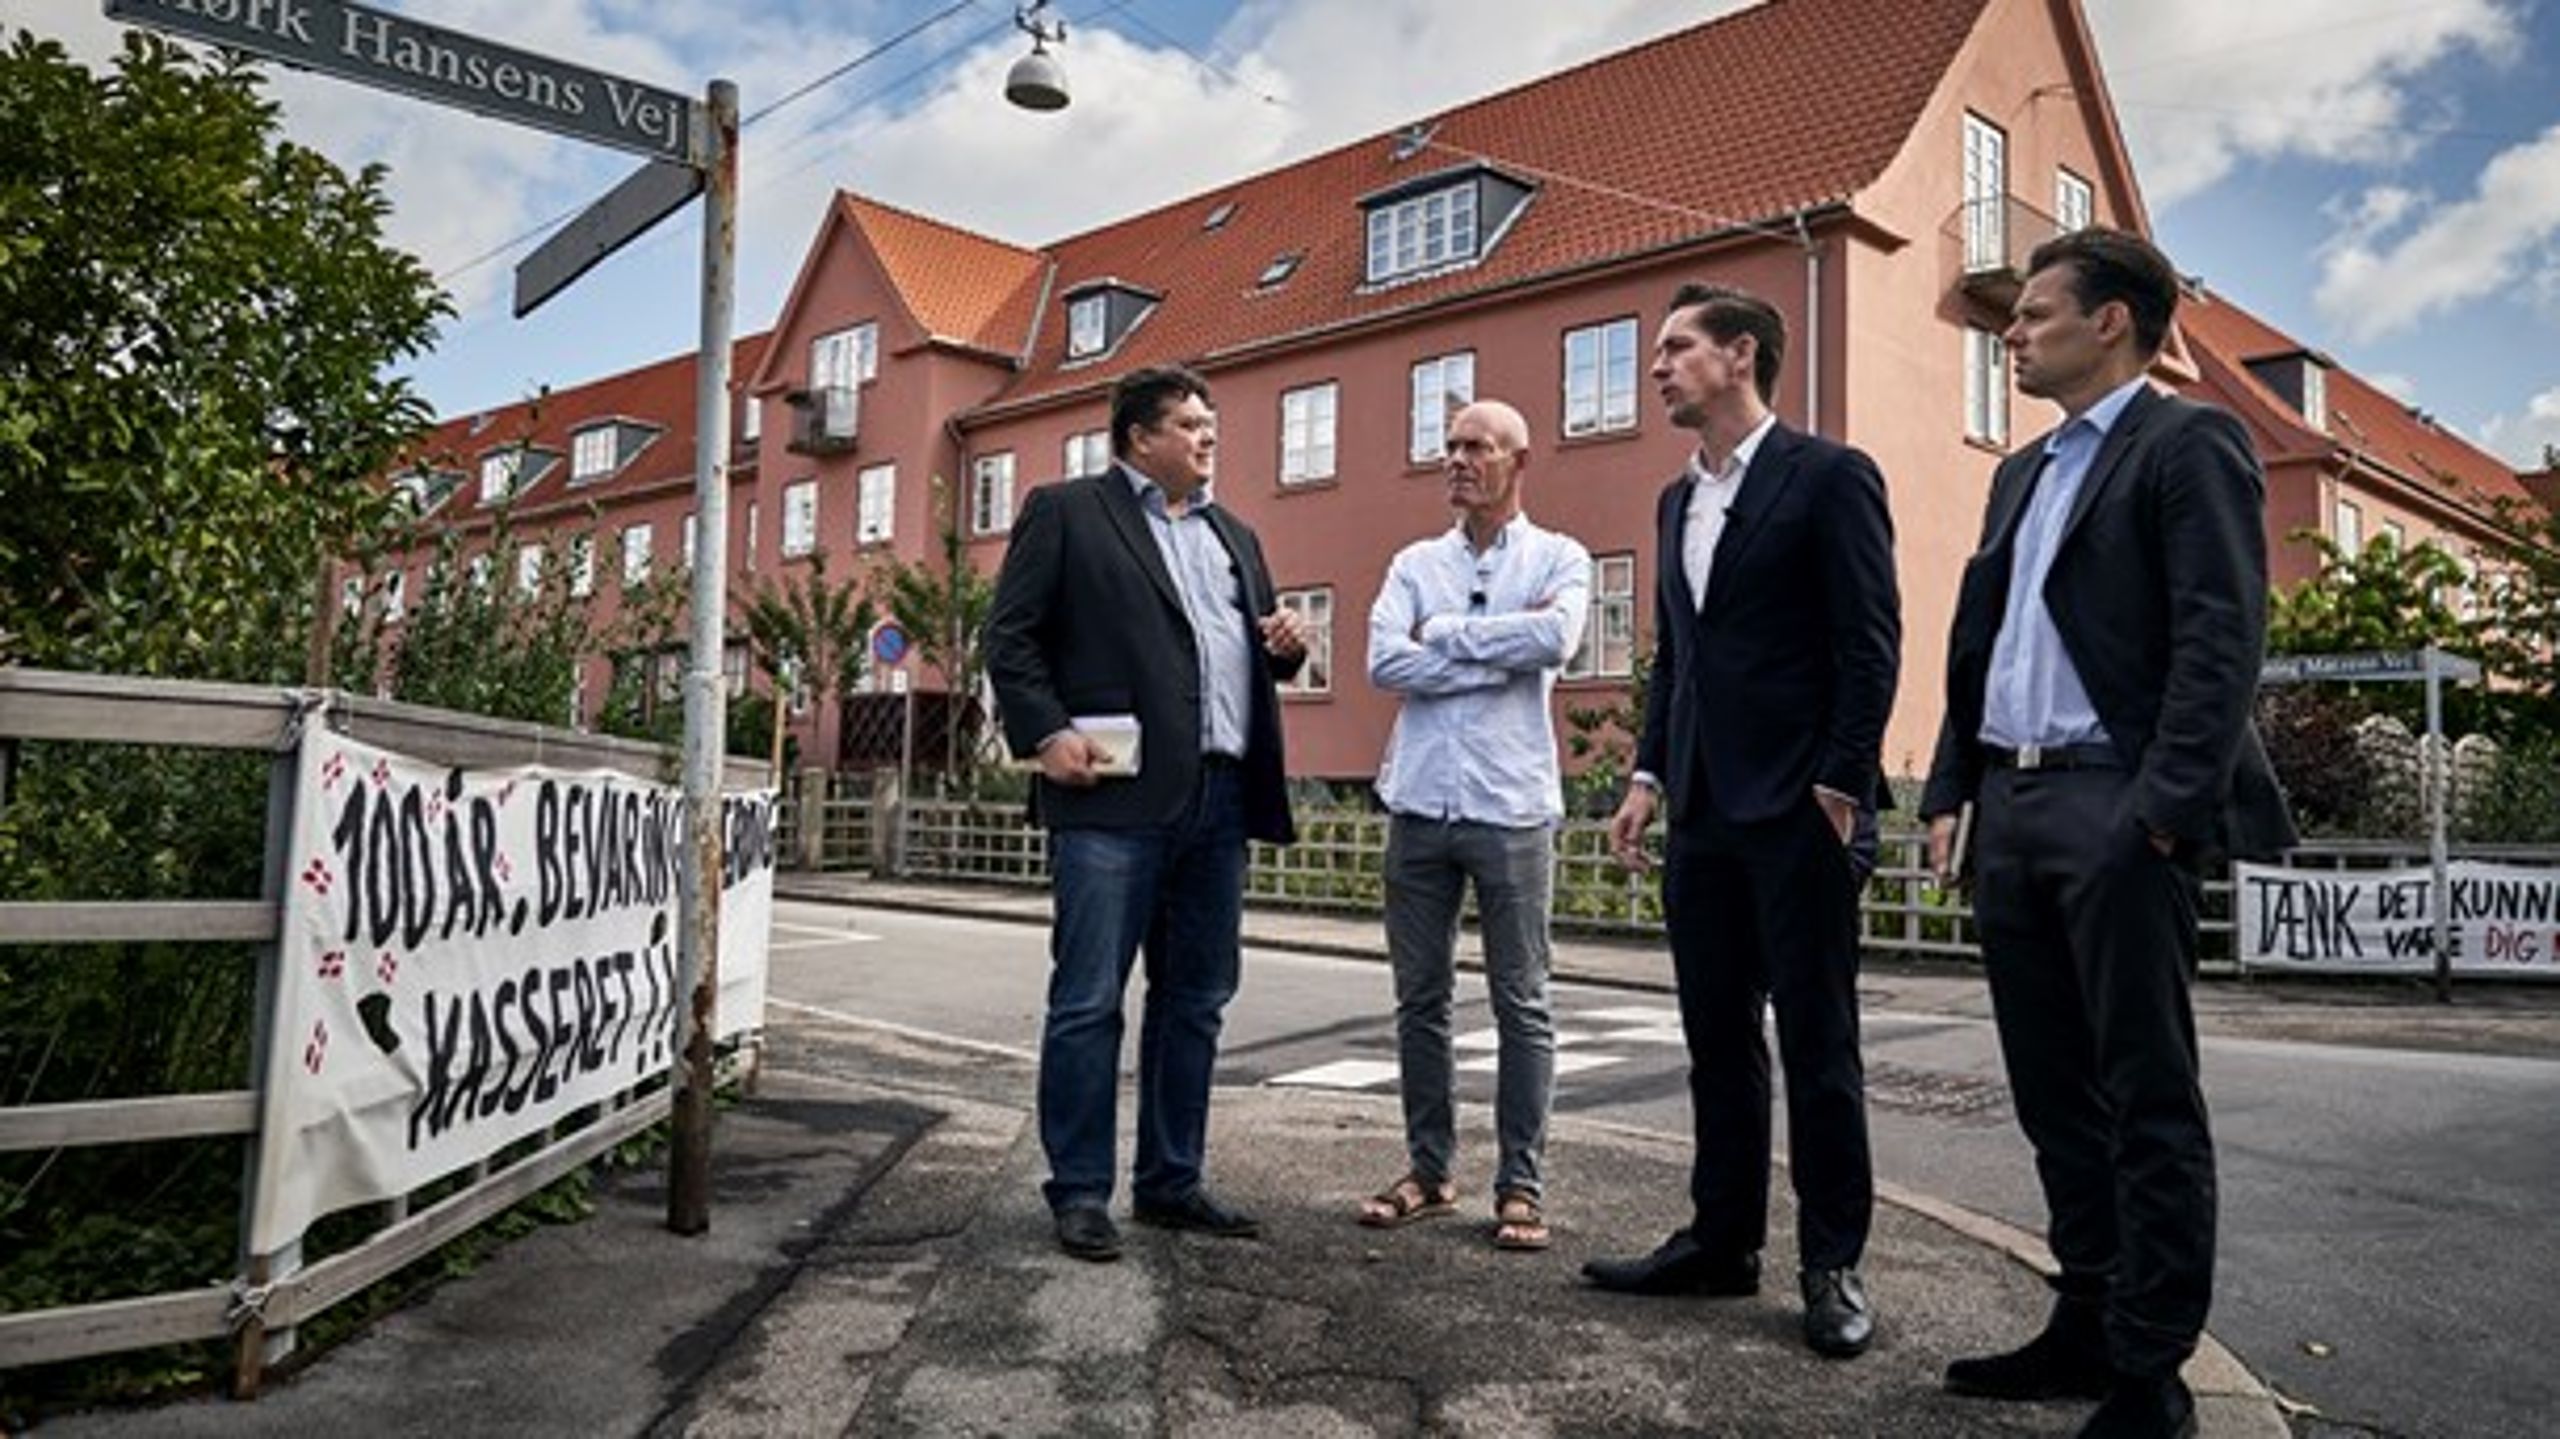 For at undgå investeringer fra Blackstone og huslejestigninger som følge af paragraf 5, stk. 2, sagsøgte Den Sønderjyske By på Frederiksberg udlejeren.